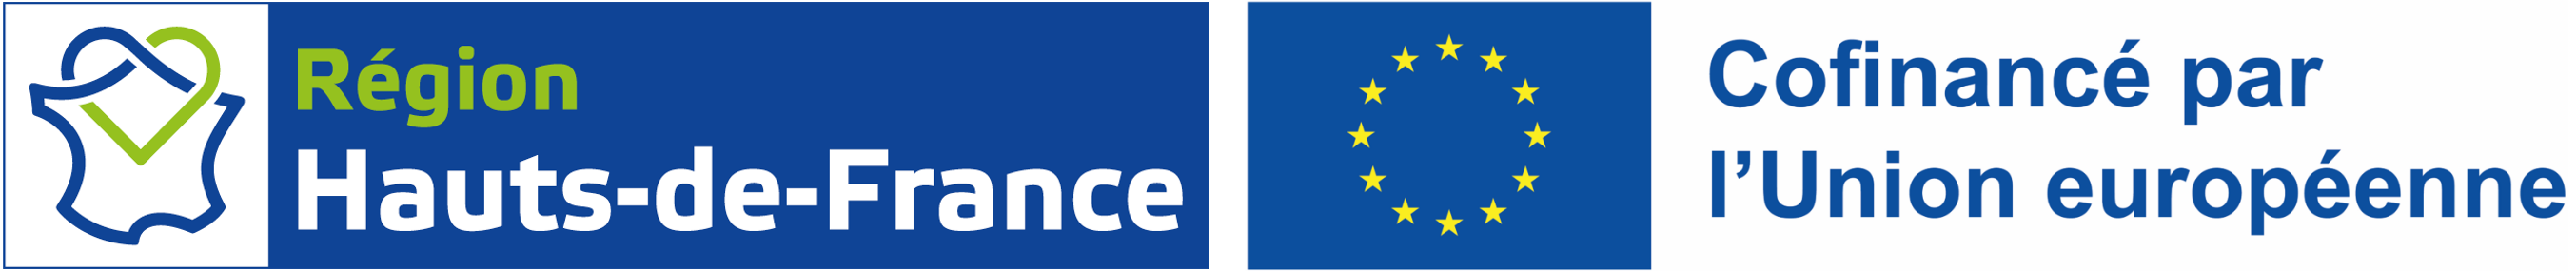 Logos de l'union européenne et de la région hauts de france